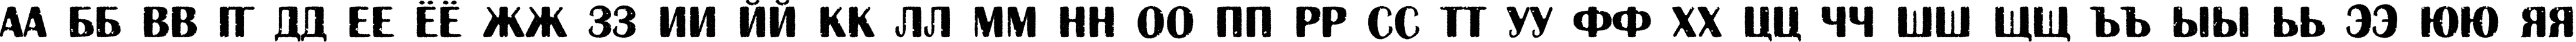 Пример написания русского алфавита шрифтом a_AlbionicTtlRg&Bt